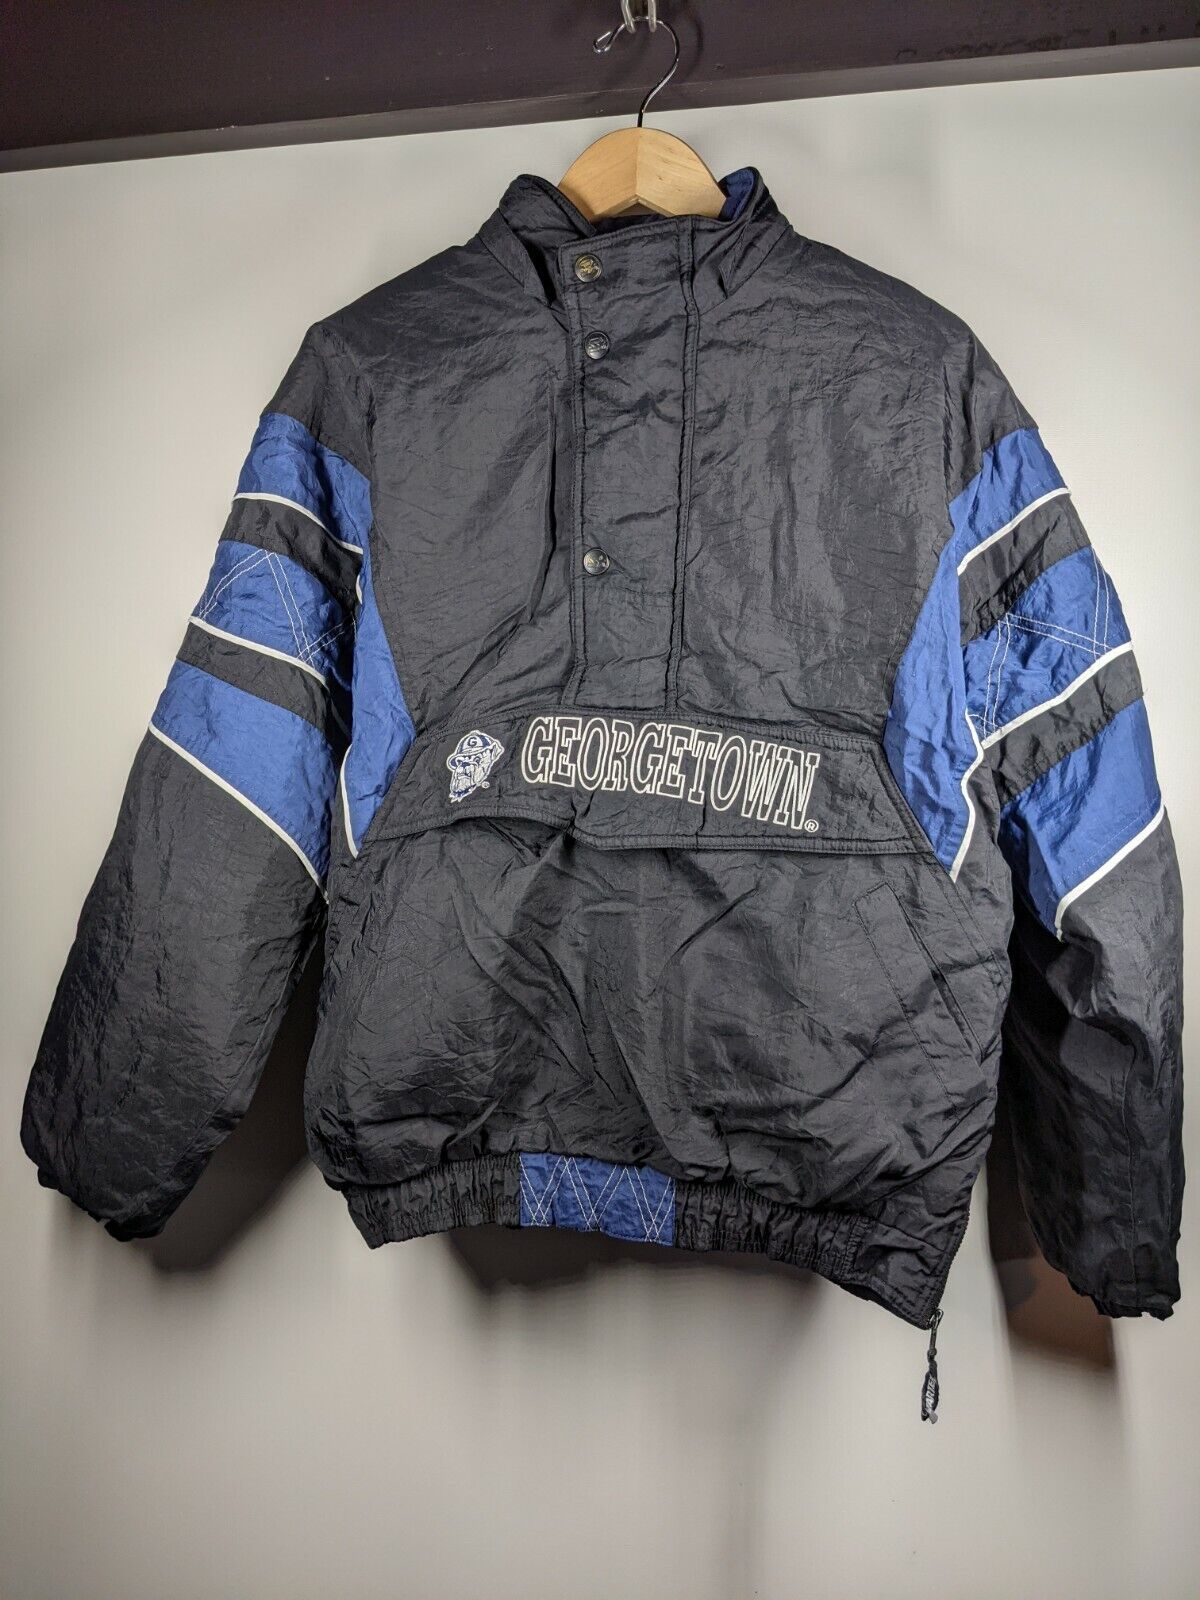 Georgetown University Hoyas Bulldogs Vintage Starter Zip Snap Jacket Large  - C3